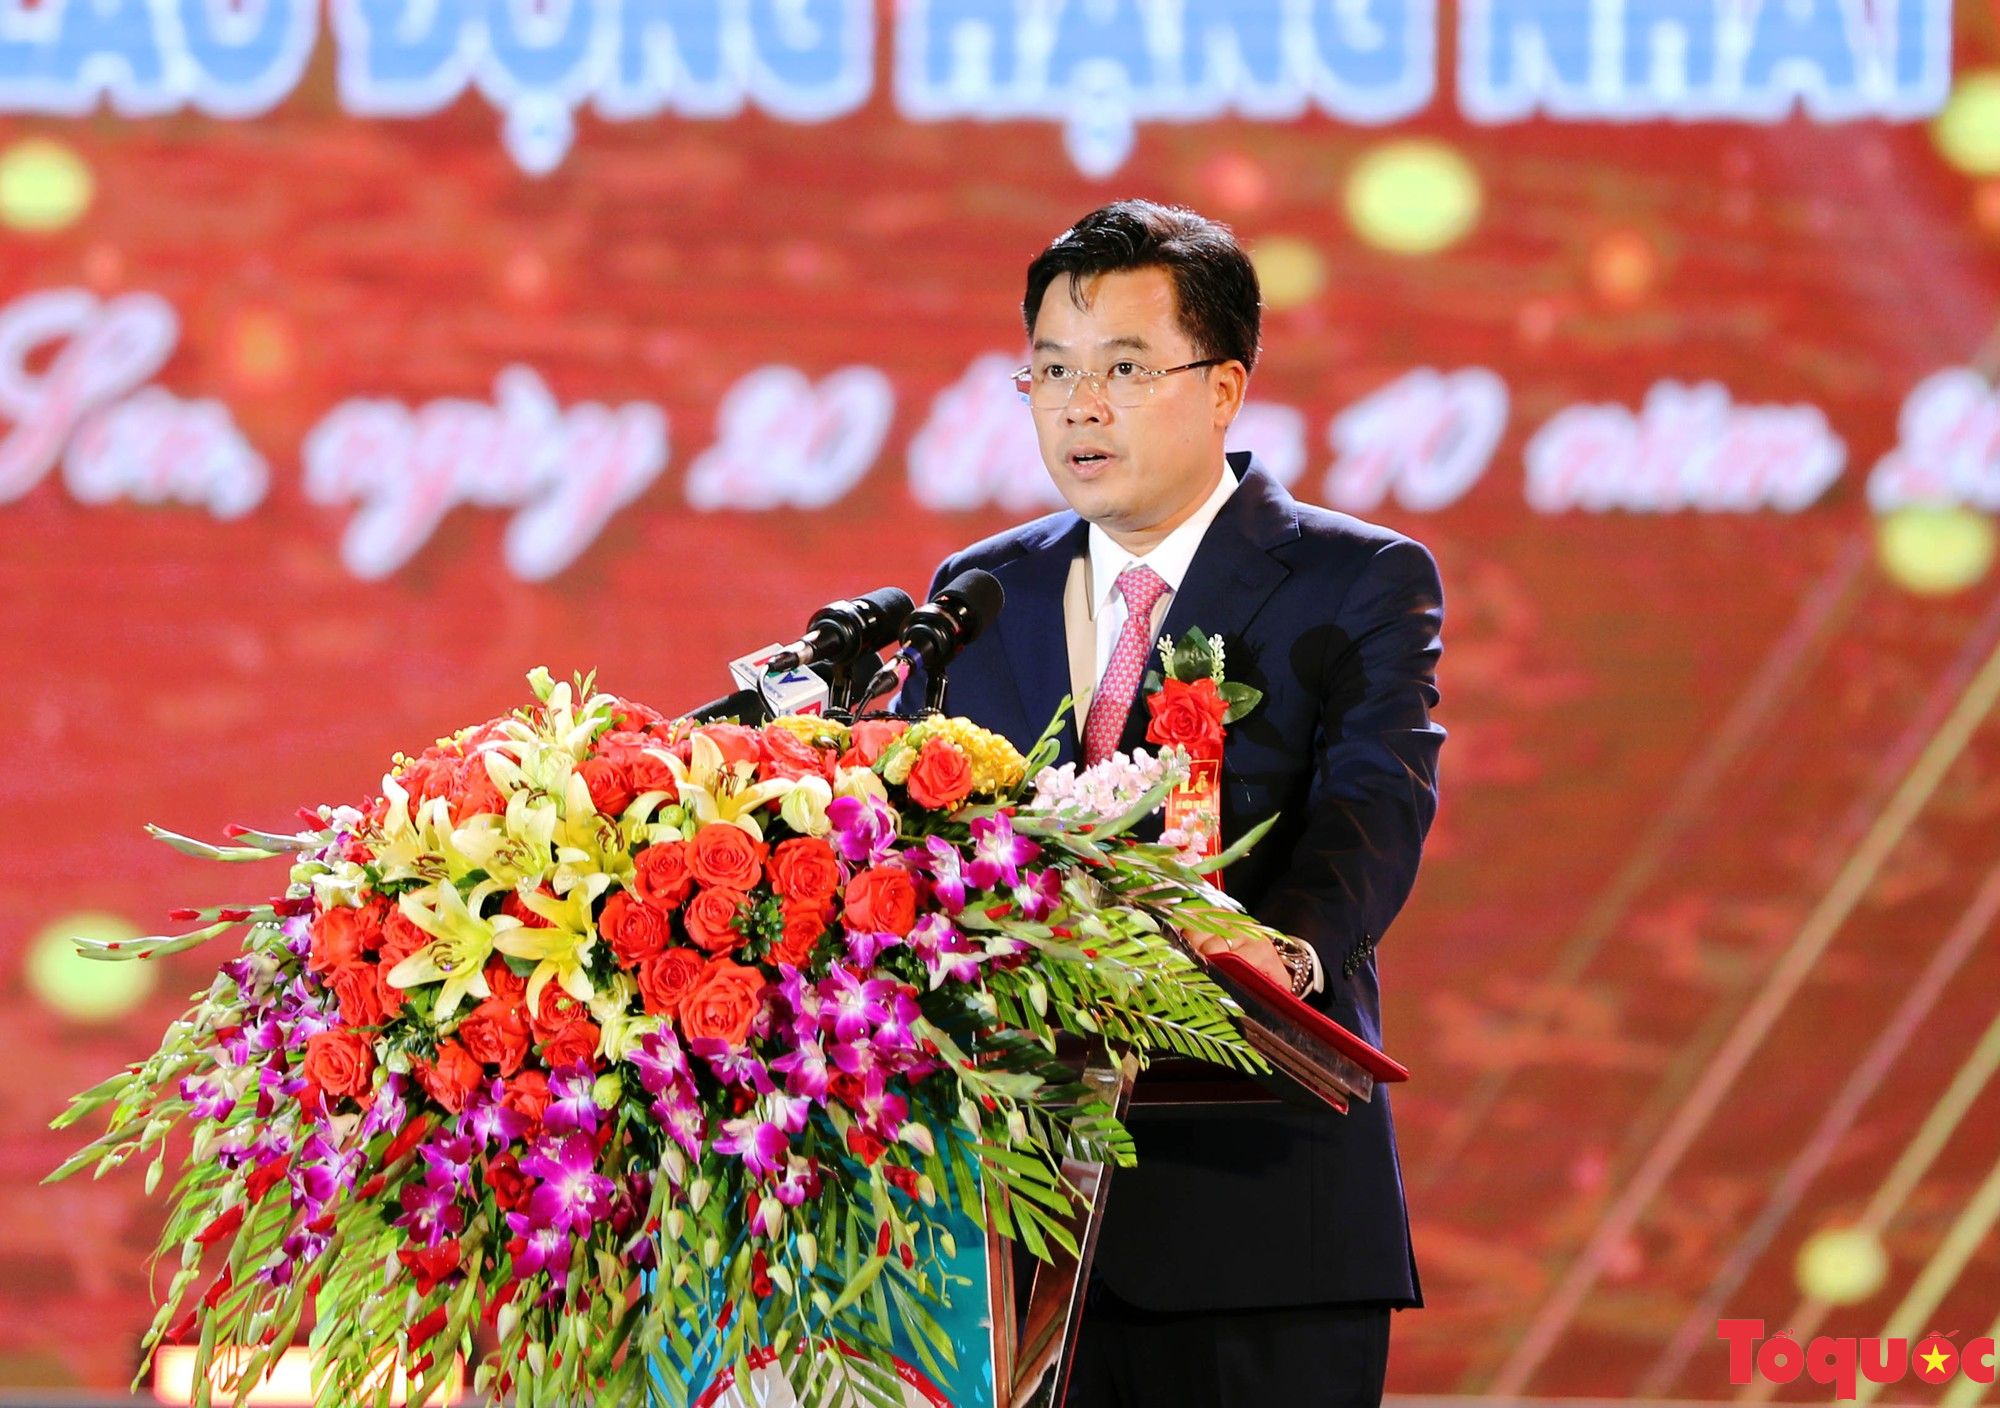 Phú Thọ kỷ niệm 190 năm thành lập huyện Thanh Sơn - Ảnh 6.